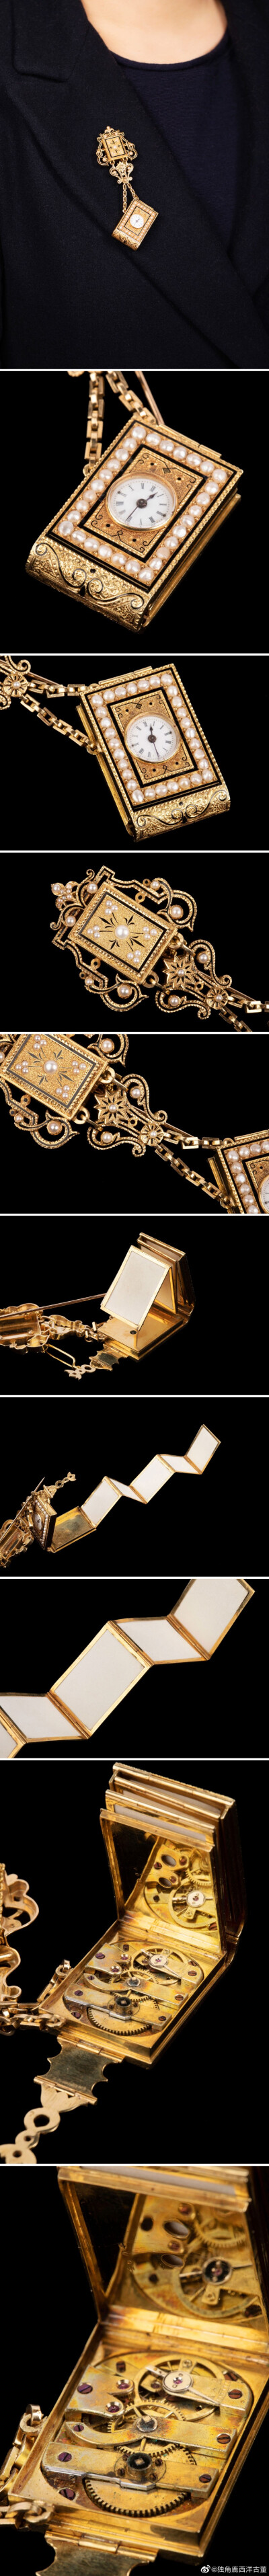 19世纪中期法国出品28k金镶嵌天然珍珠黑色珐琅修饰书本造型腰链式怀表